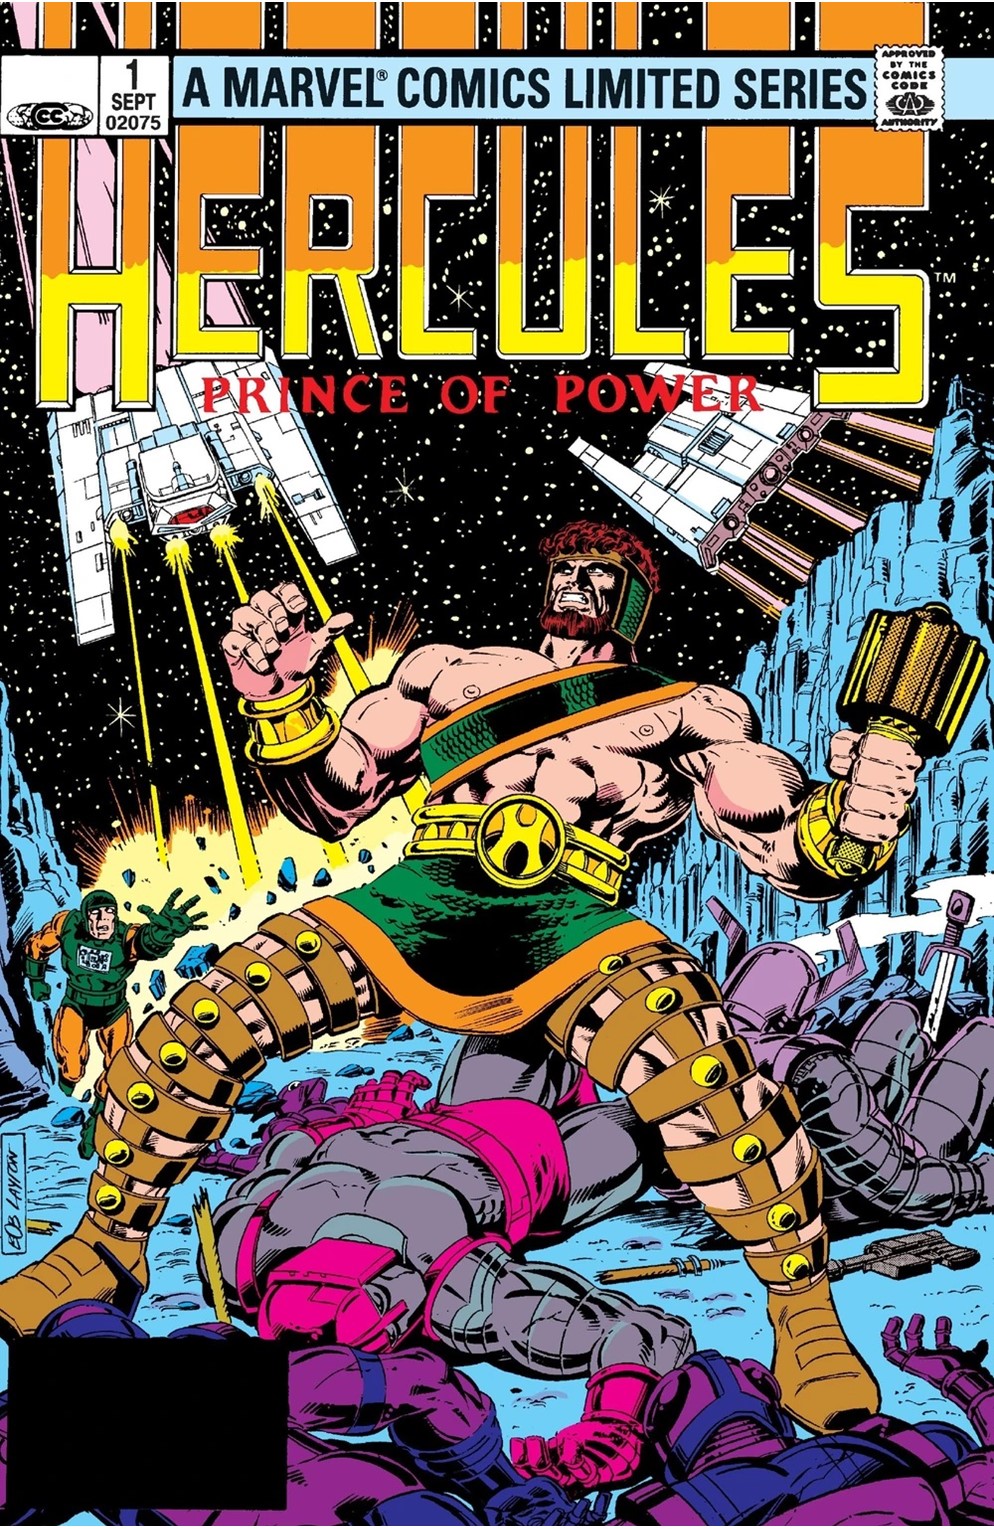 Hercules Volume 1 Limited Series Bundle Issues 1-4